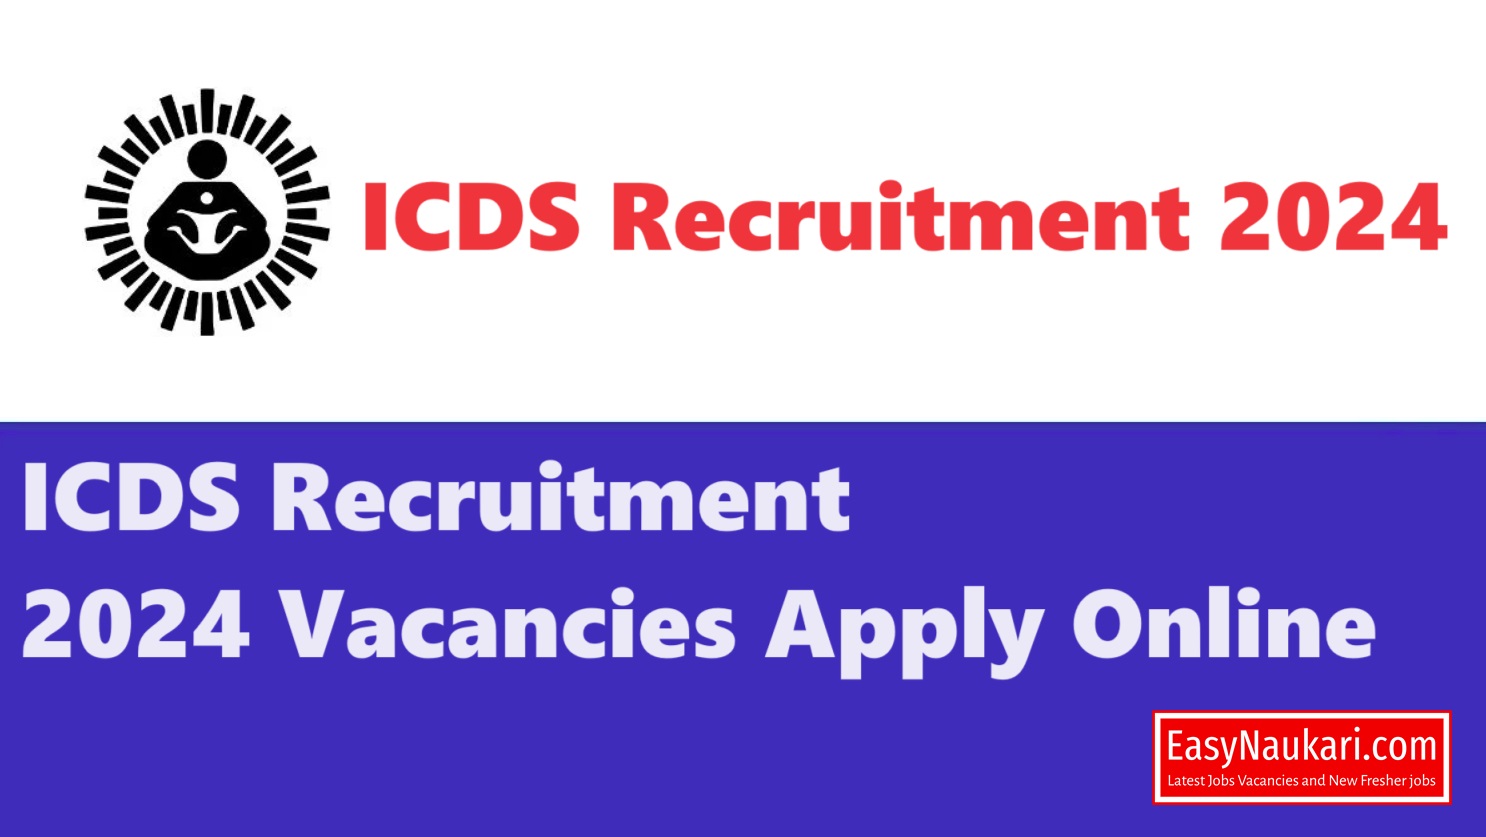 ICDS Recruitment 2024 Vacancies Apply Online